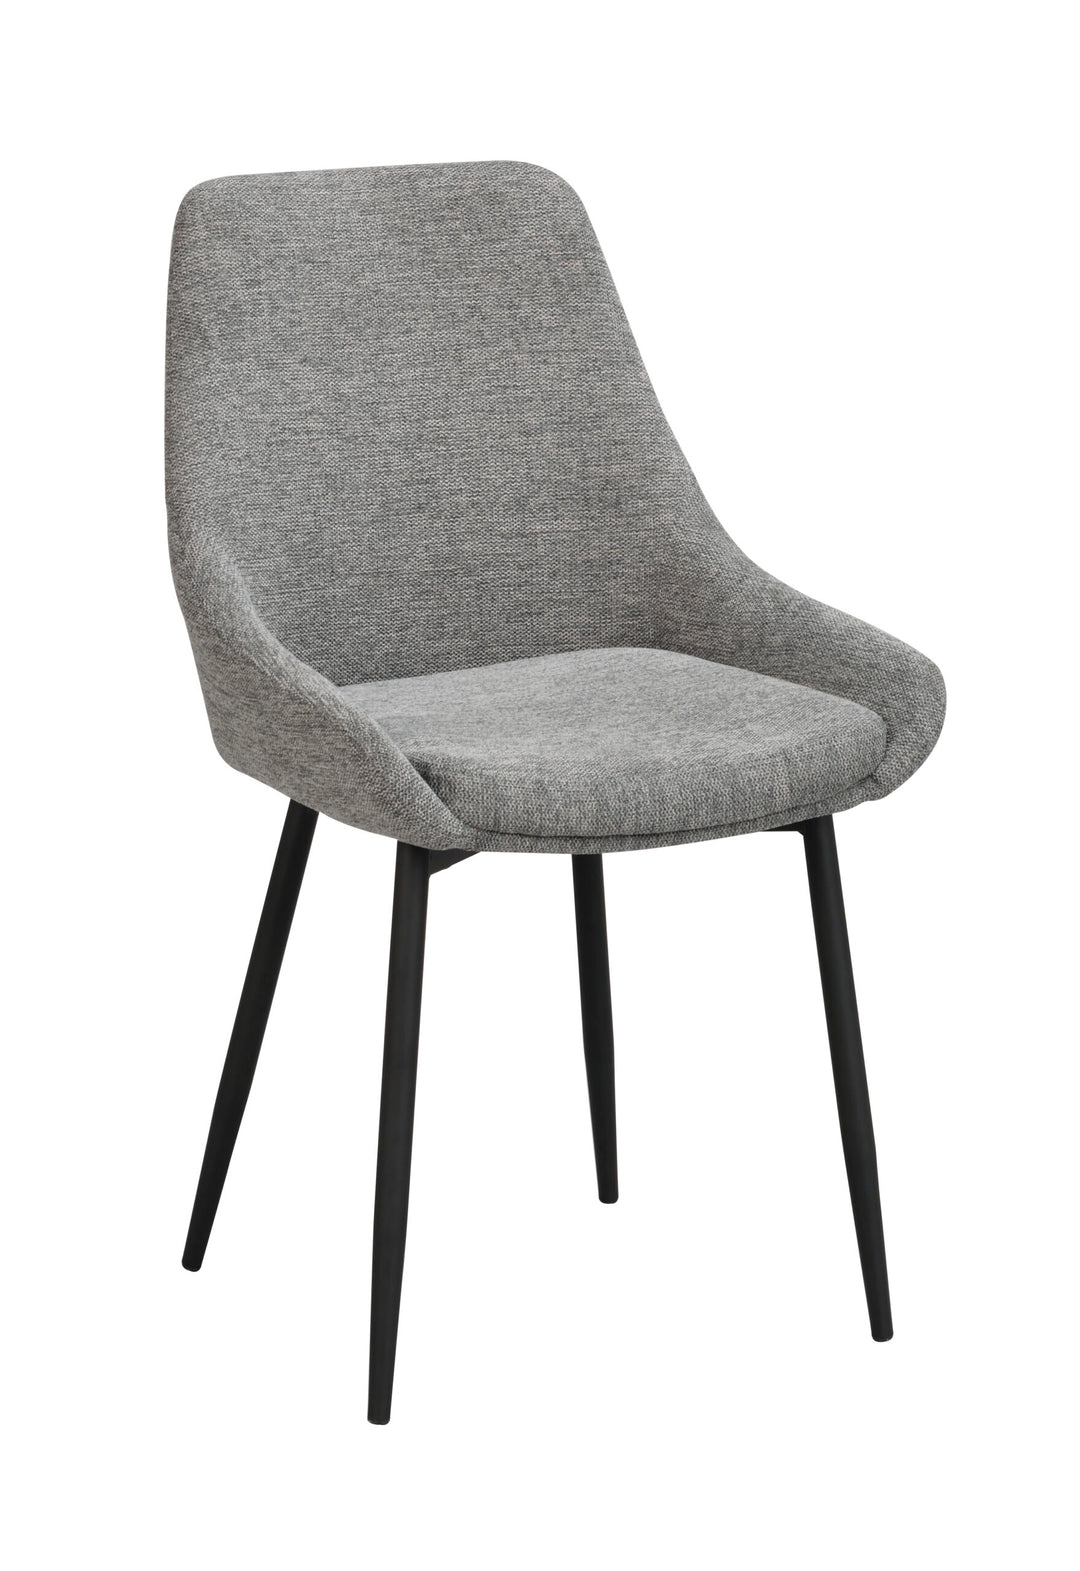 110486_b, Sierra chair, grey fabric_black